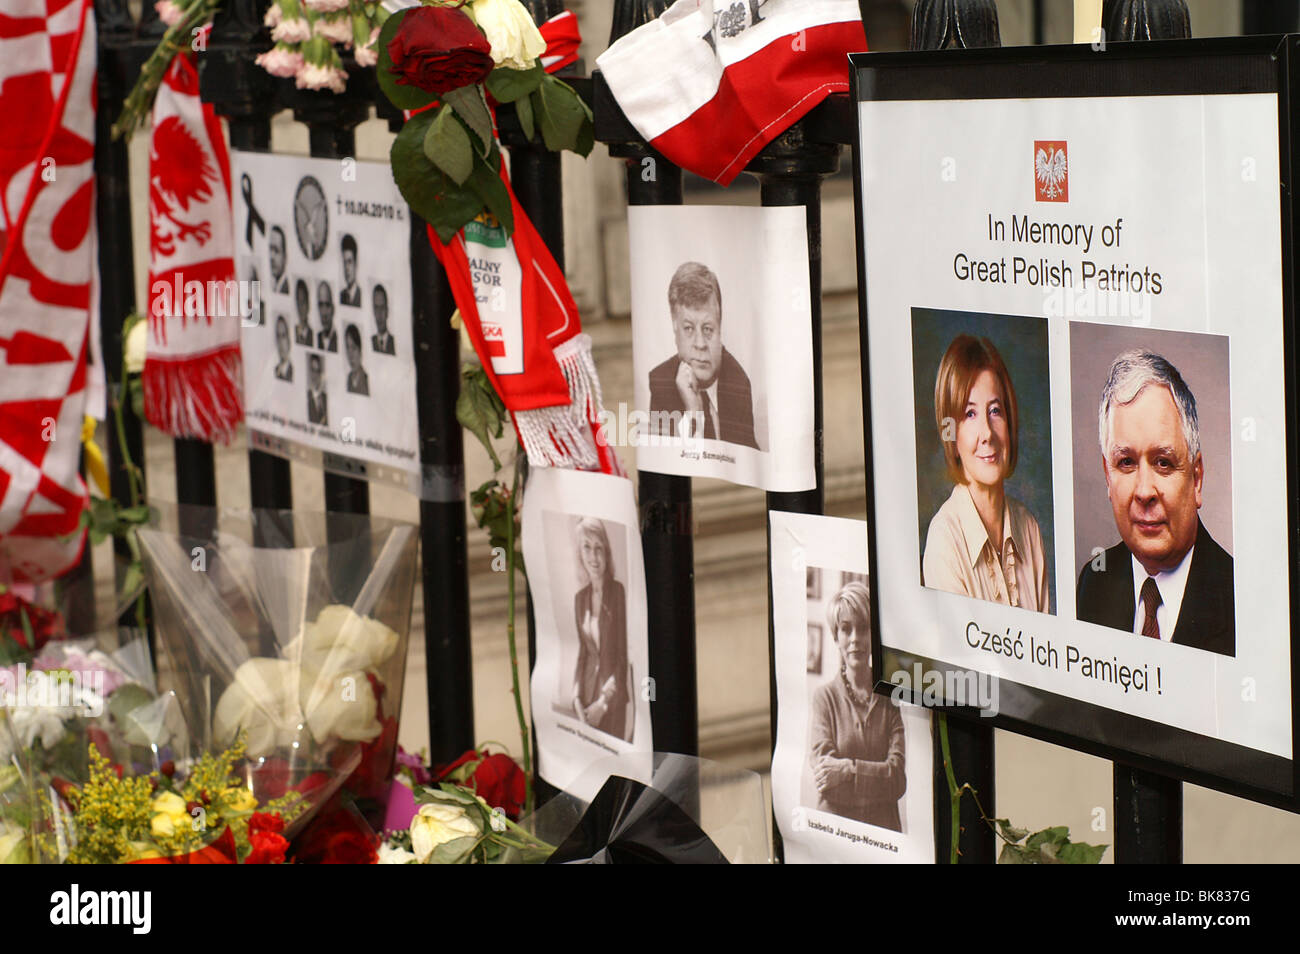 Lech und Maria Kaczynski Schrein nach Flugzeugabsturz. Polnische Botschaft in London Stockfoto